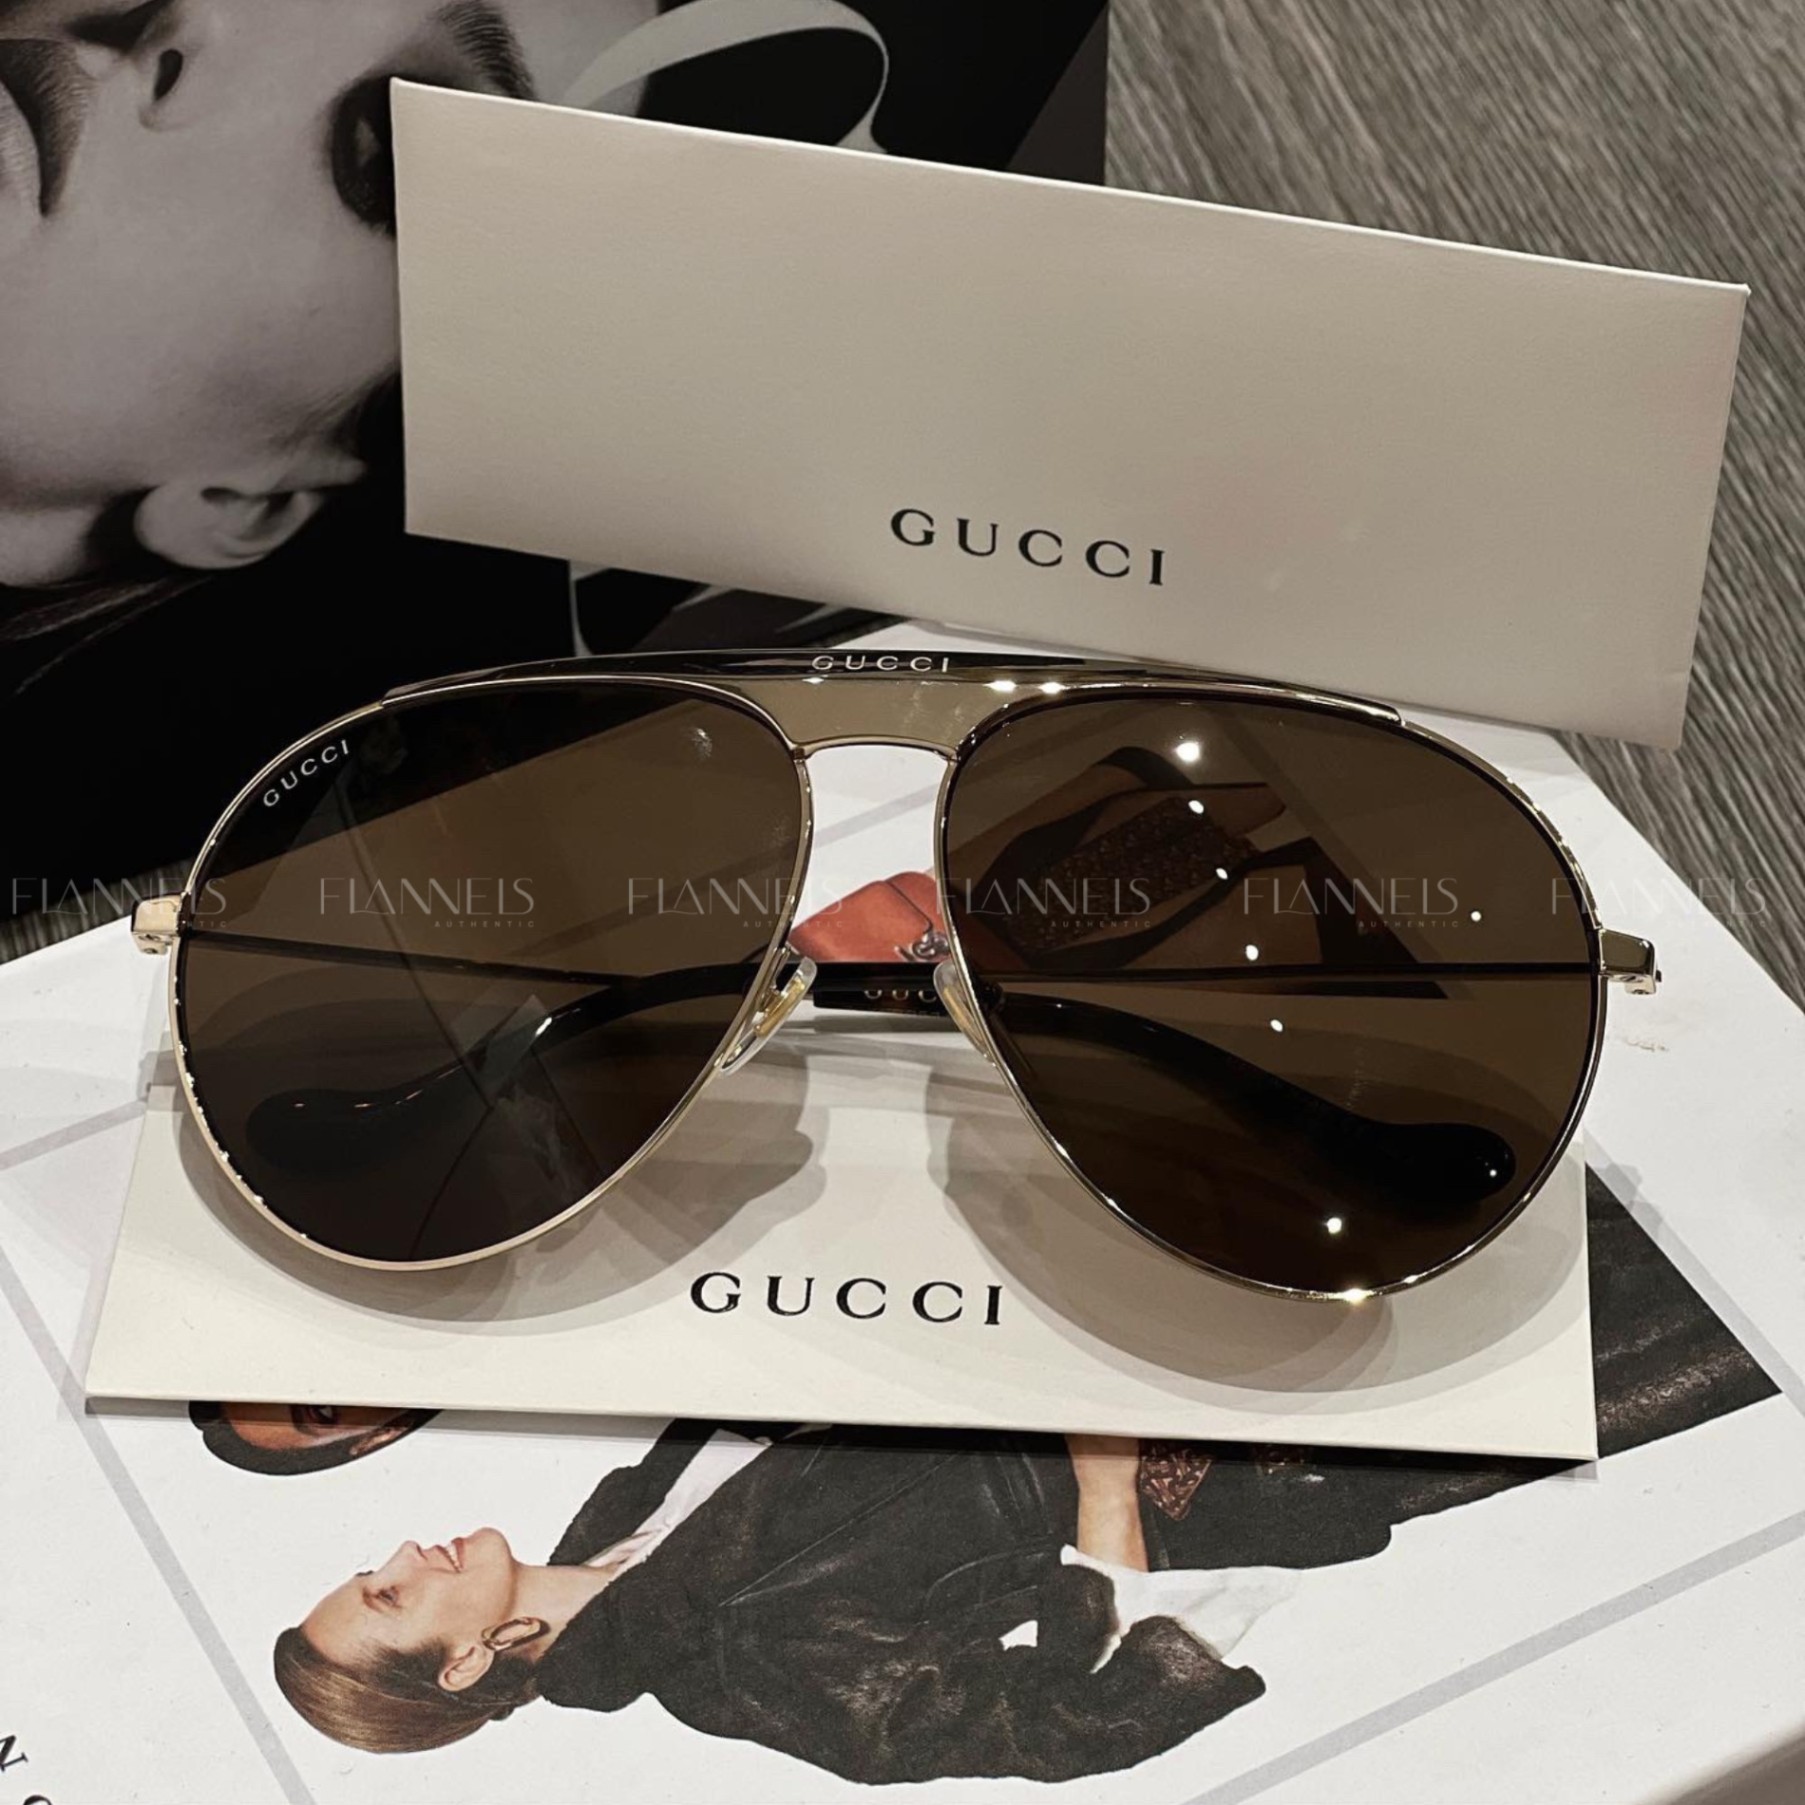 Gucci Oversized Silver Sunglasses for Women | eBay